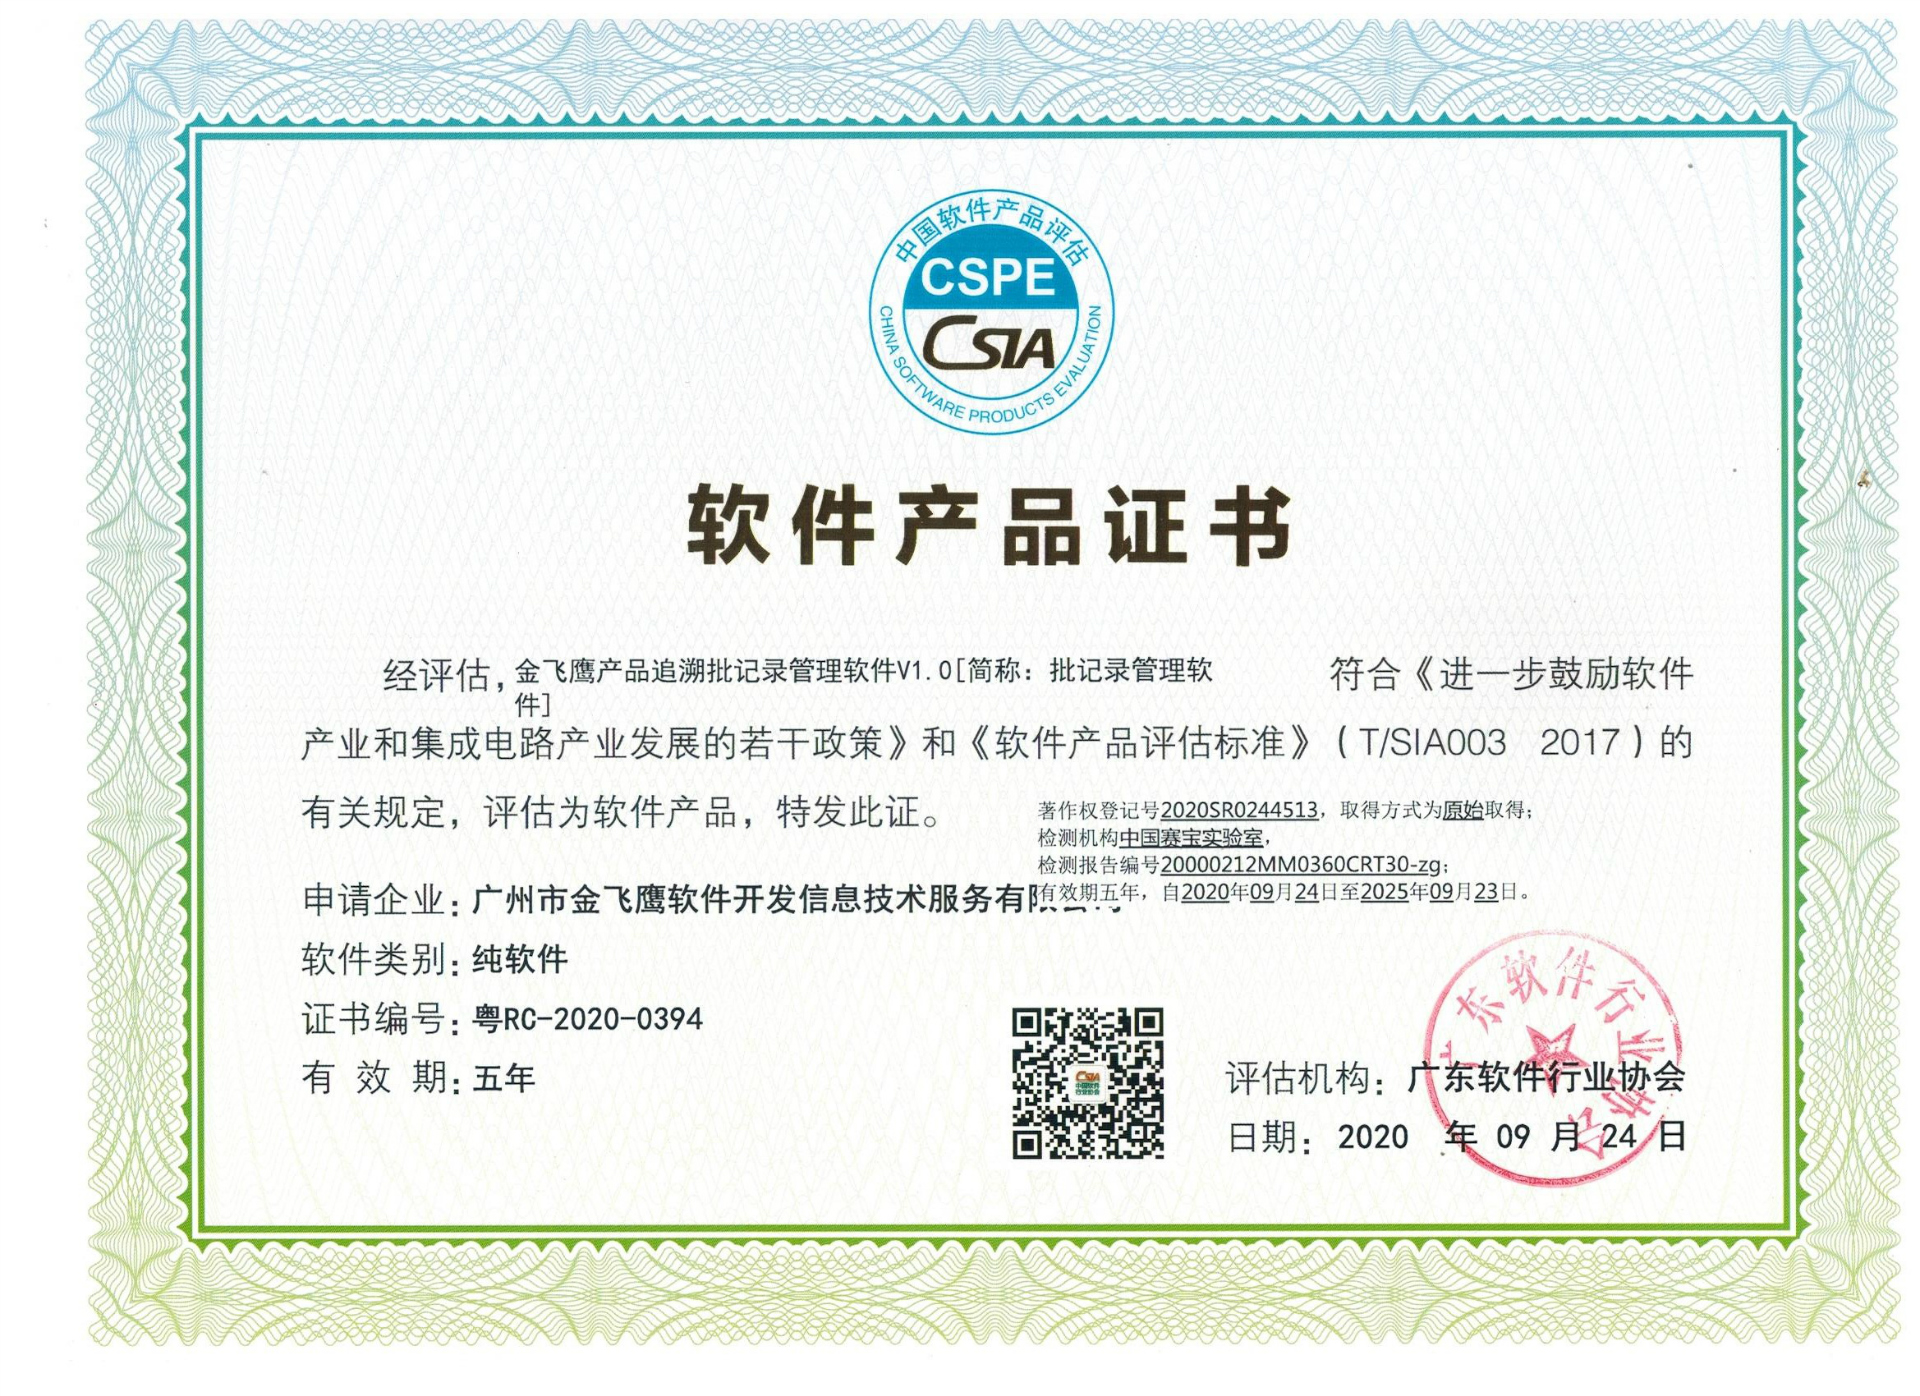 恭贺金飞鹰独立拥有自主知识产权的批记录软件获得软件产品证书！